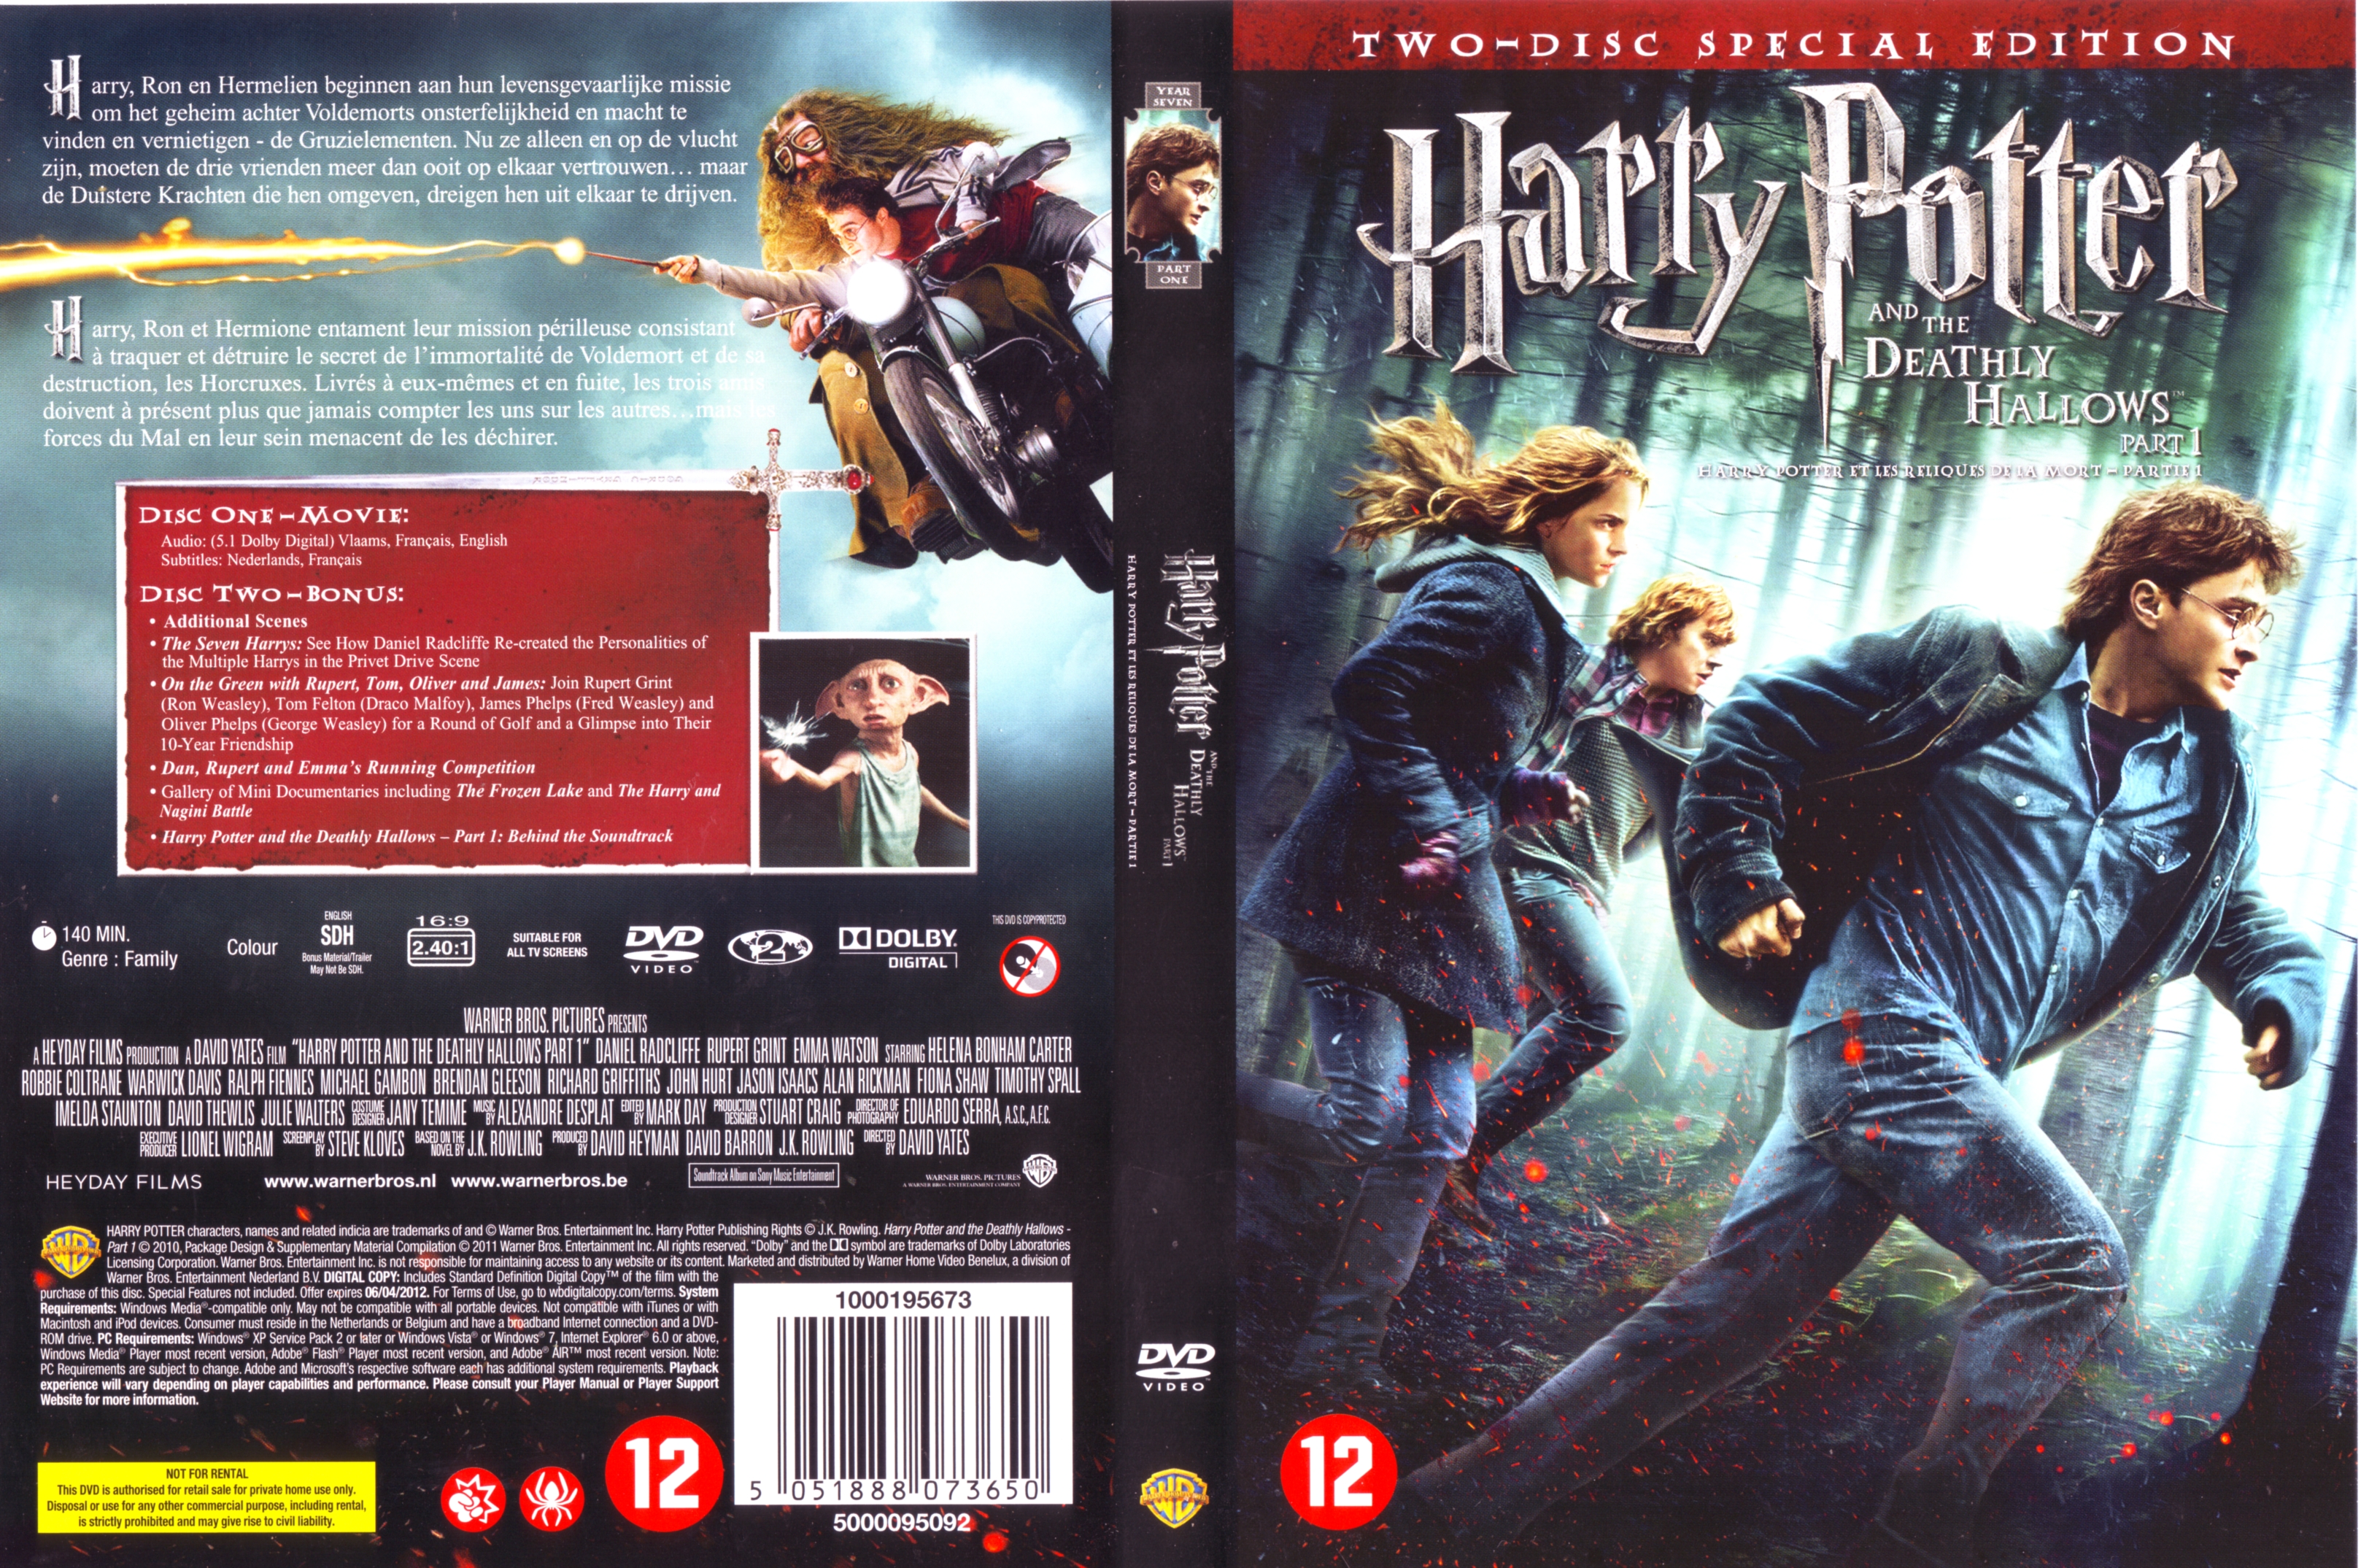 Jaquette DVD Harry Potter et les reliques de la mort - 1re partie